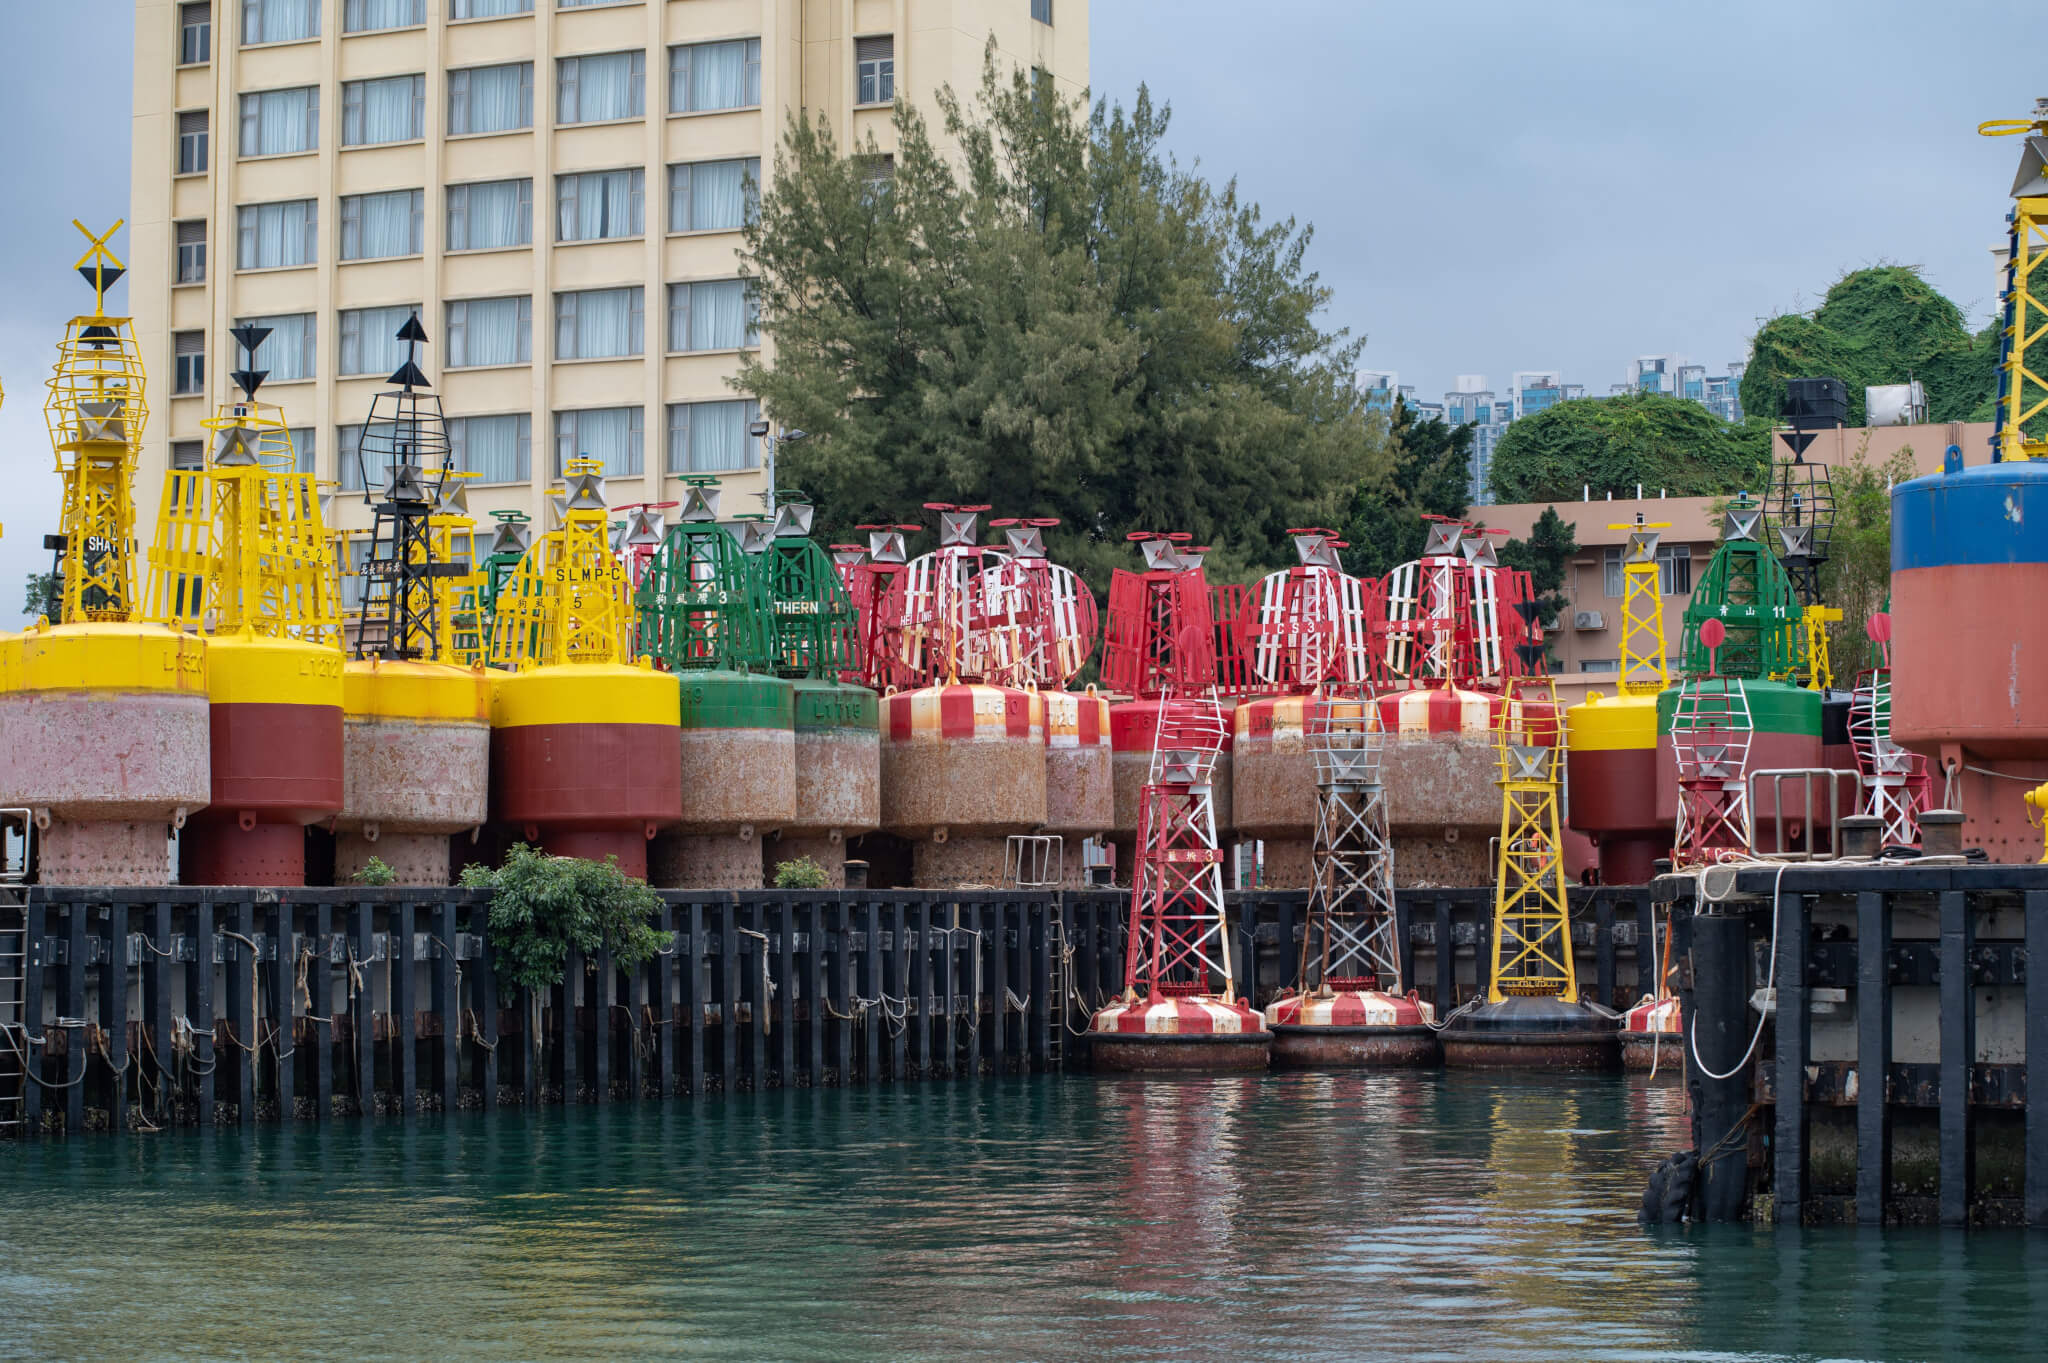 去年十一月的海運周，Matthew前往參觀昂船洲政府船塢的輔航設備及繫泡組工場和青洲燈塔（圖片由受訪者提供）